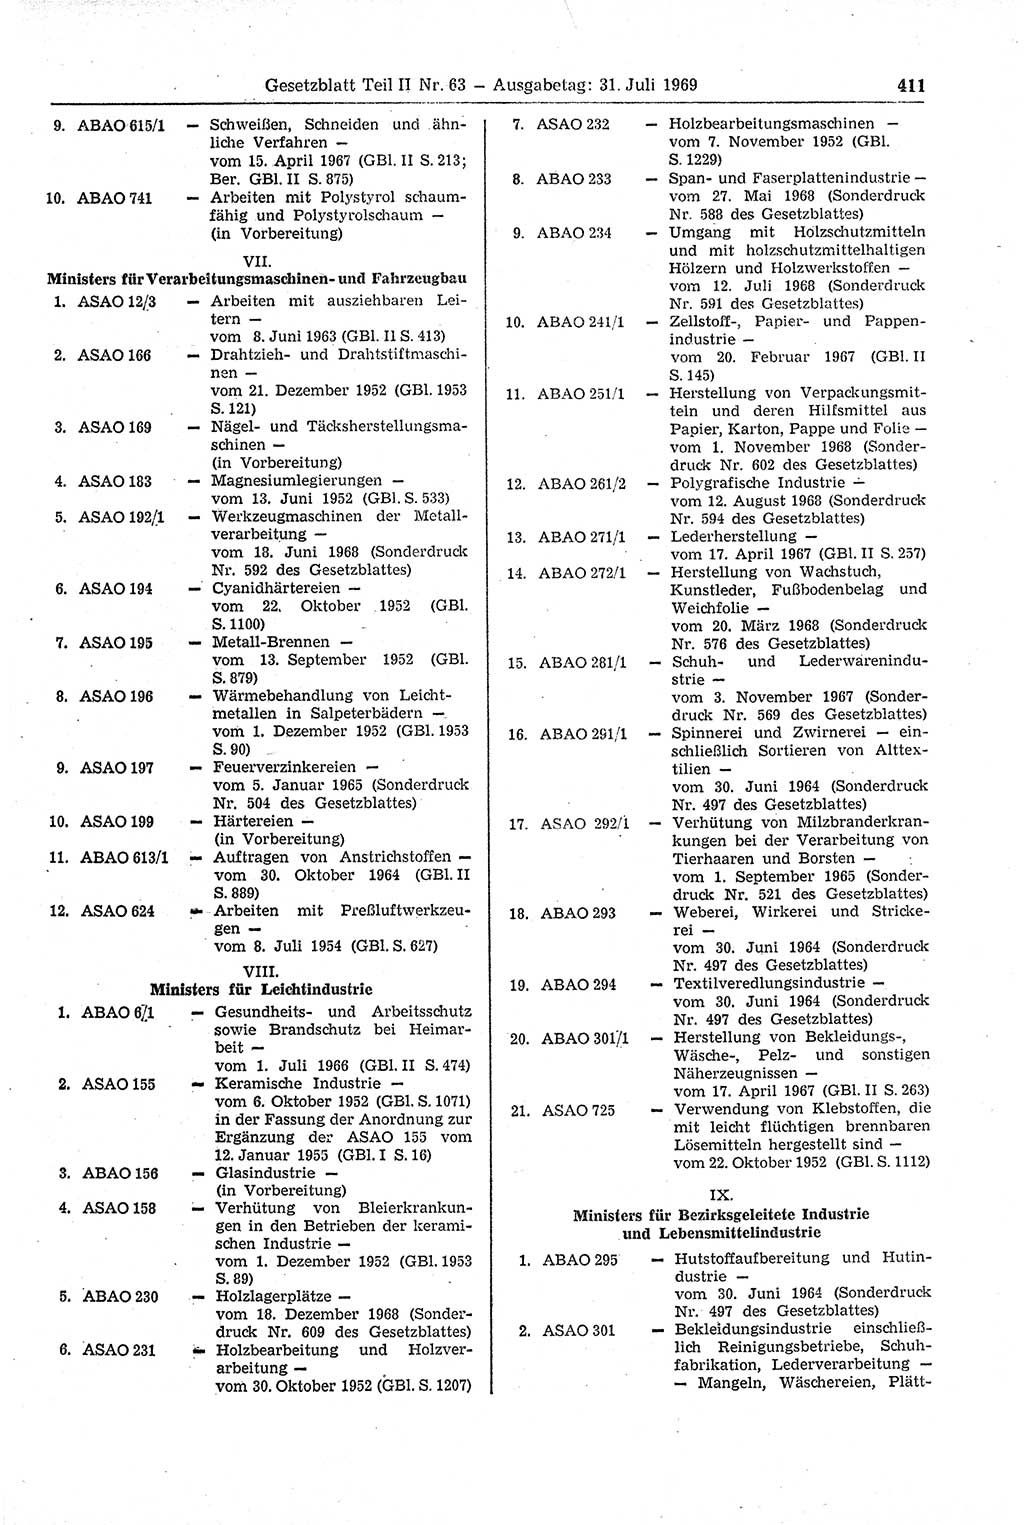 Gesetzblatt (GBl.) der Deutschen Demokratischen Republik (DDR) Teil ⅠⅠ 1969, Seite 411 (GBl. DDR ⅠⅠ 1969, S. 411)